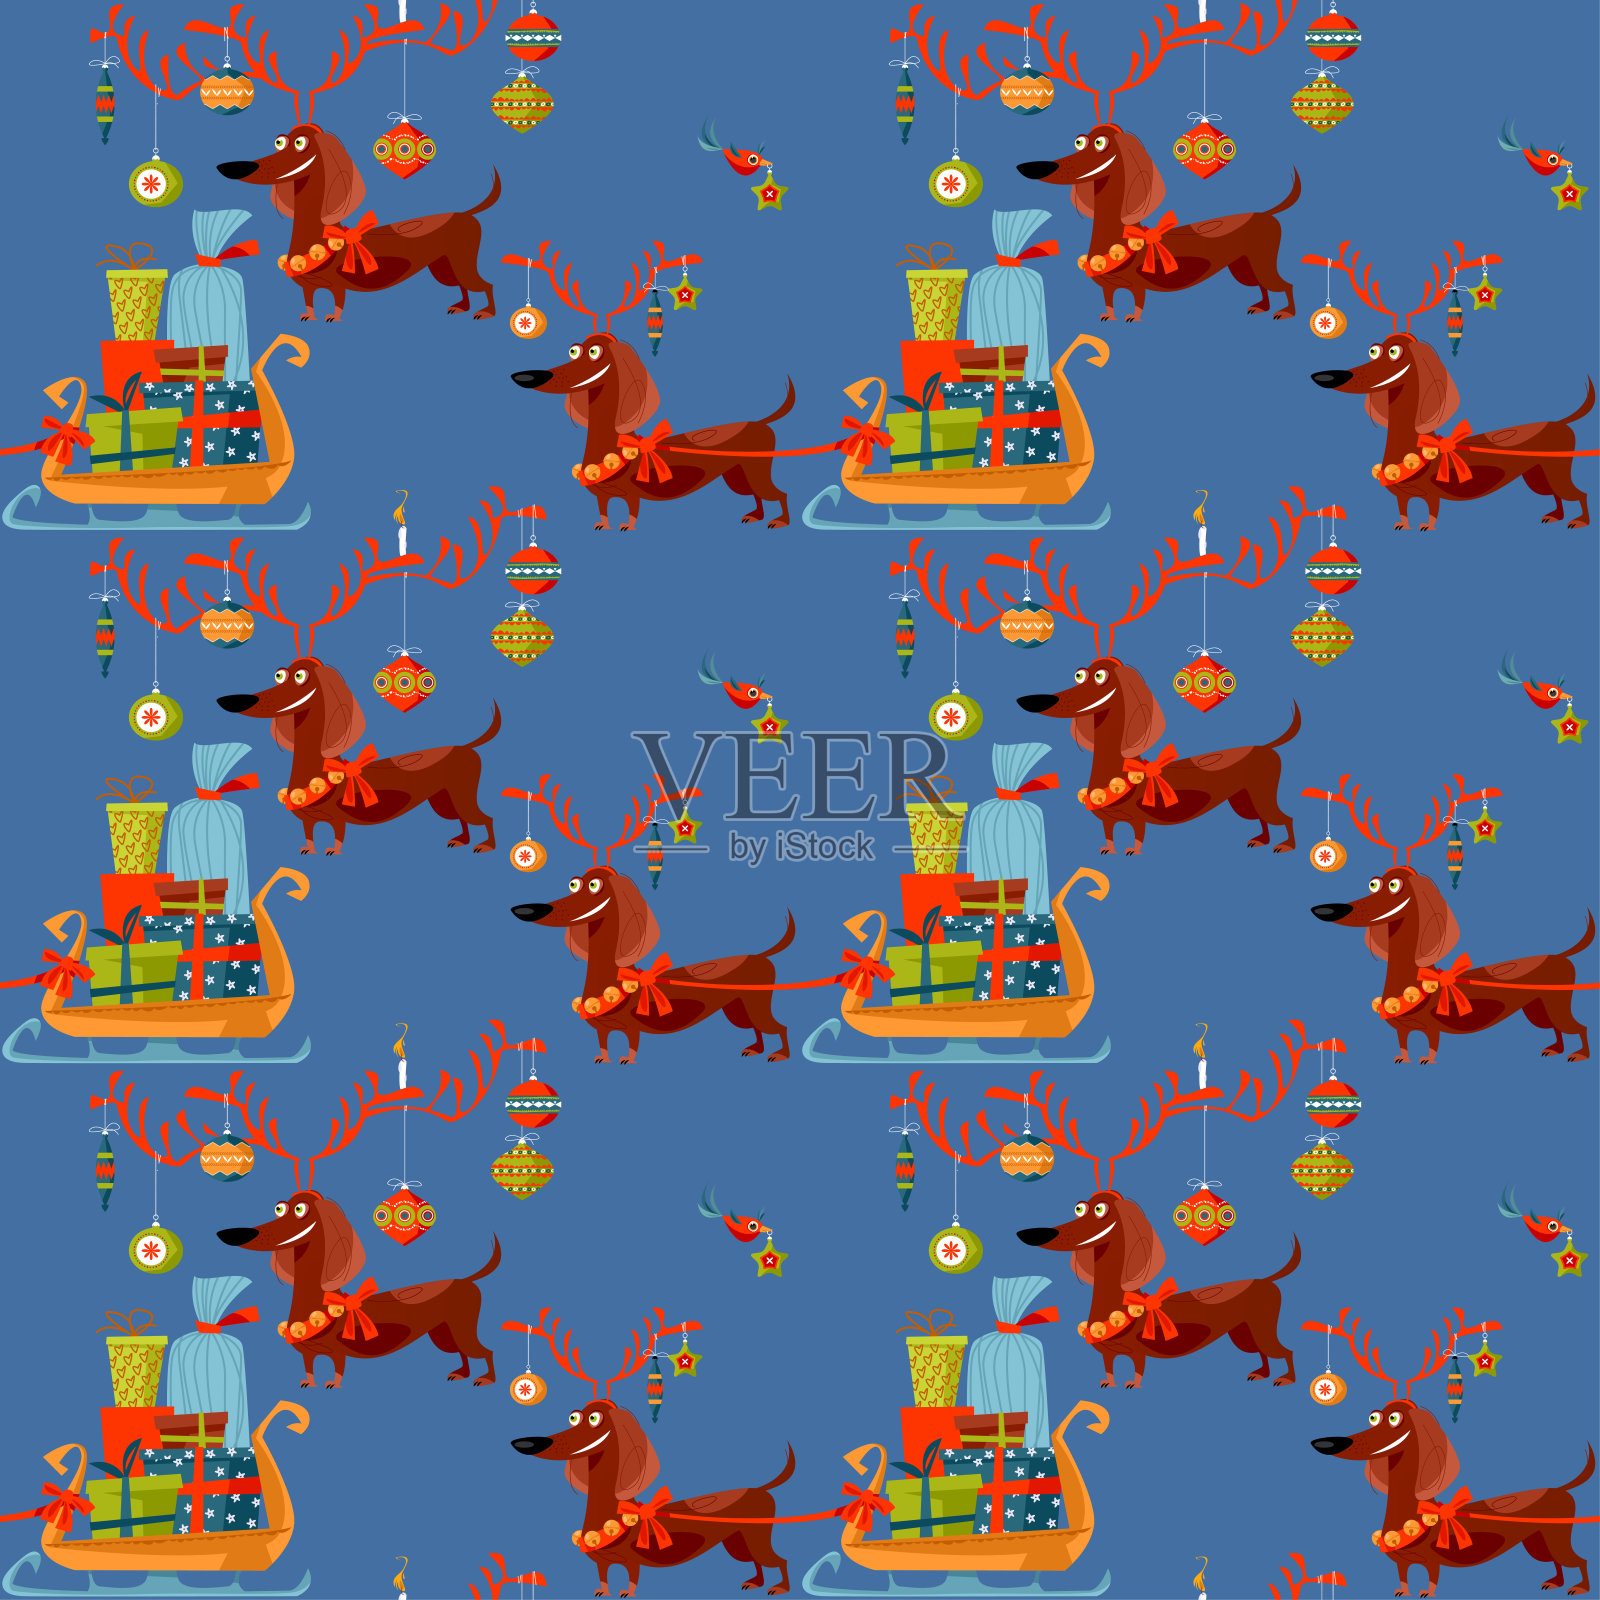 装扮成鹿的腊肠狗拉着装满圣诞礼物的雪橇。无缝的背景图案。插画图片素材